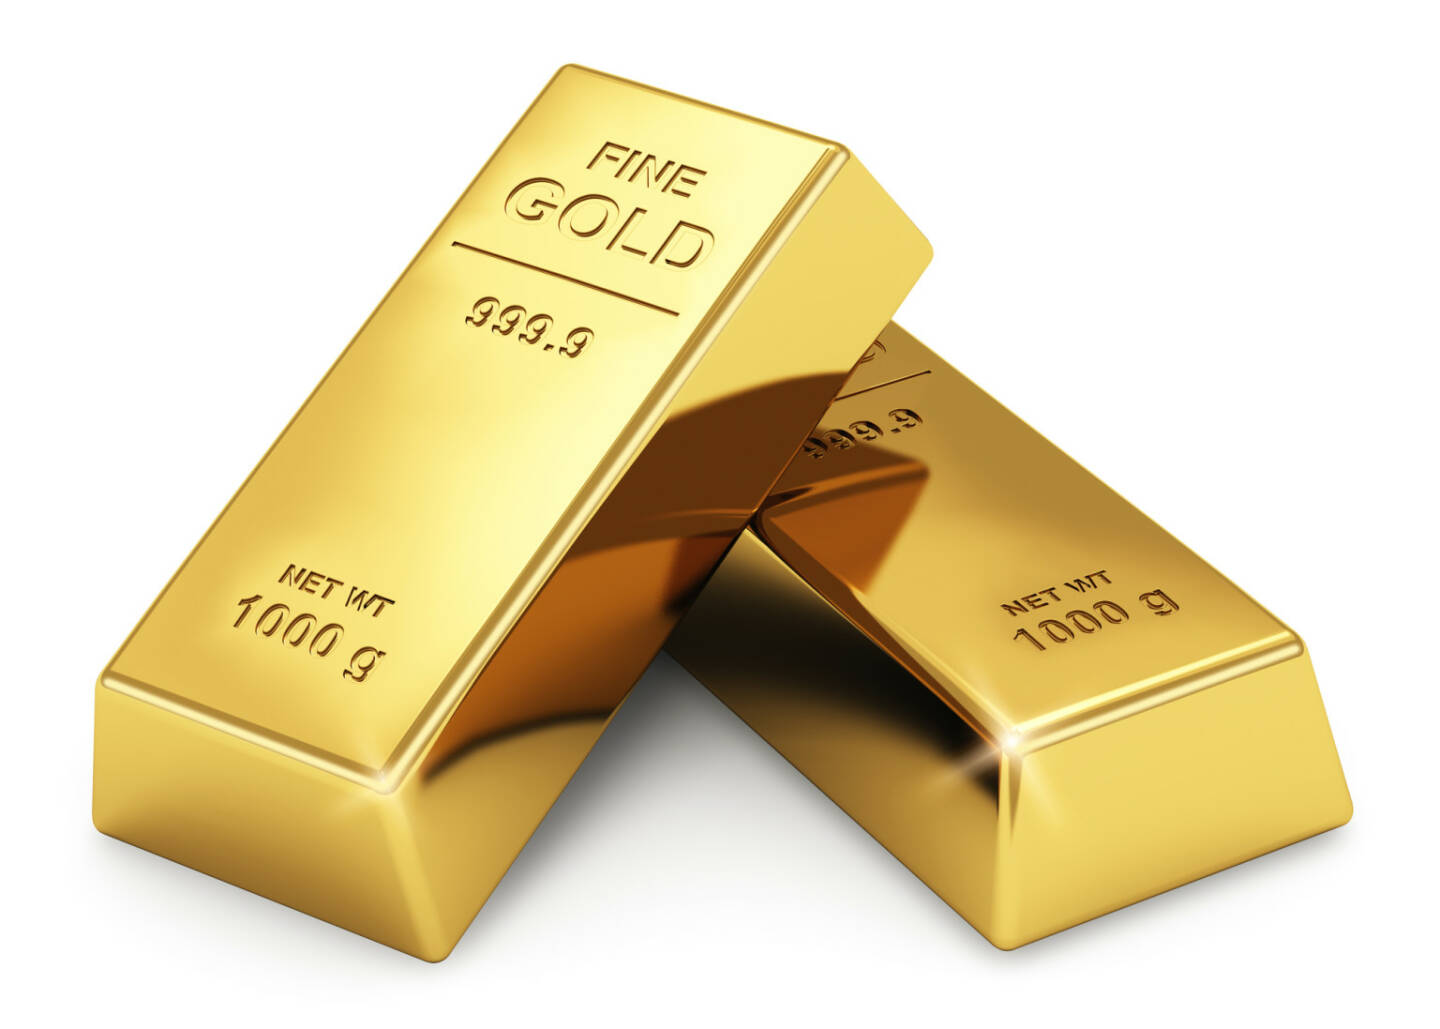 Gold, Goldbarren - https://de.depositphotos.com/19492613/stock-photo-gold-ingots.html